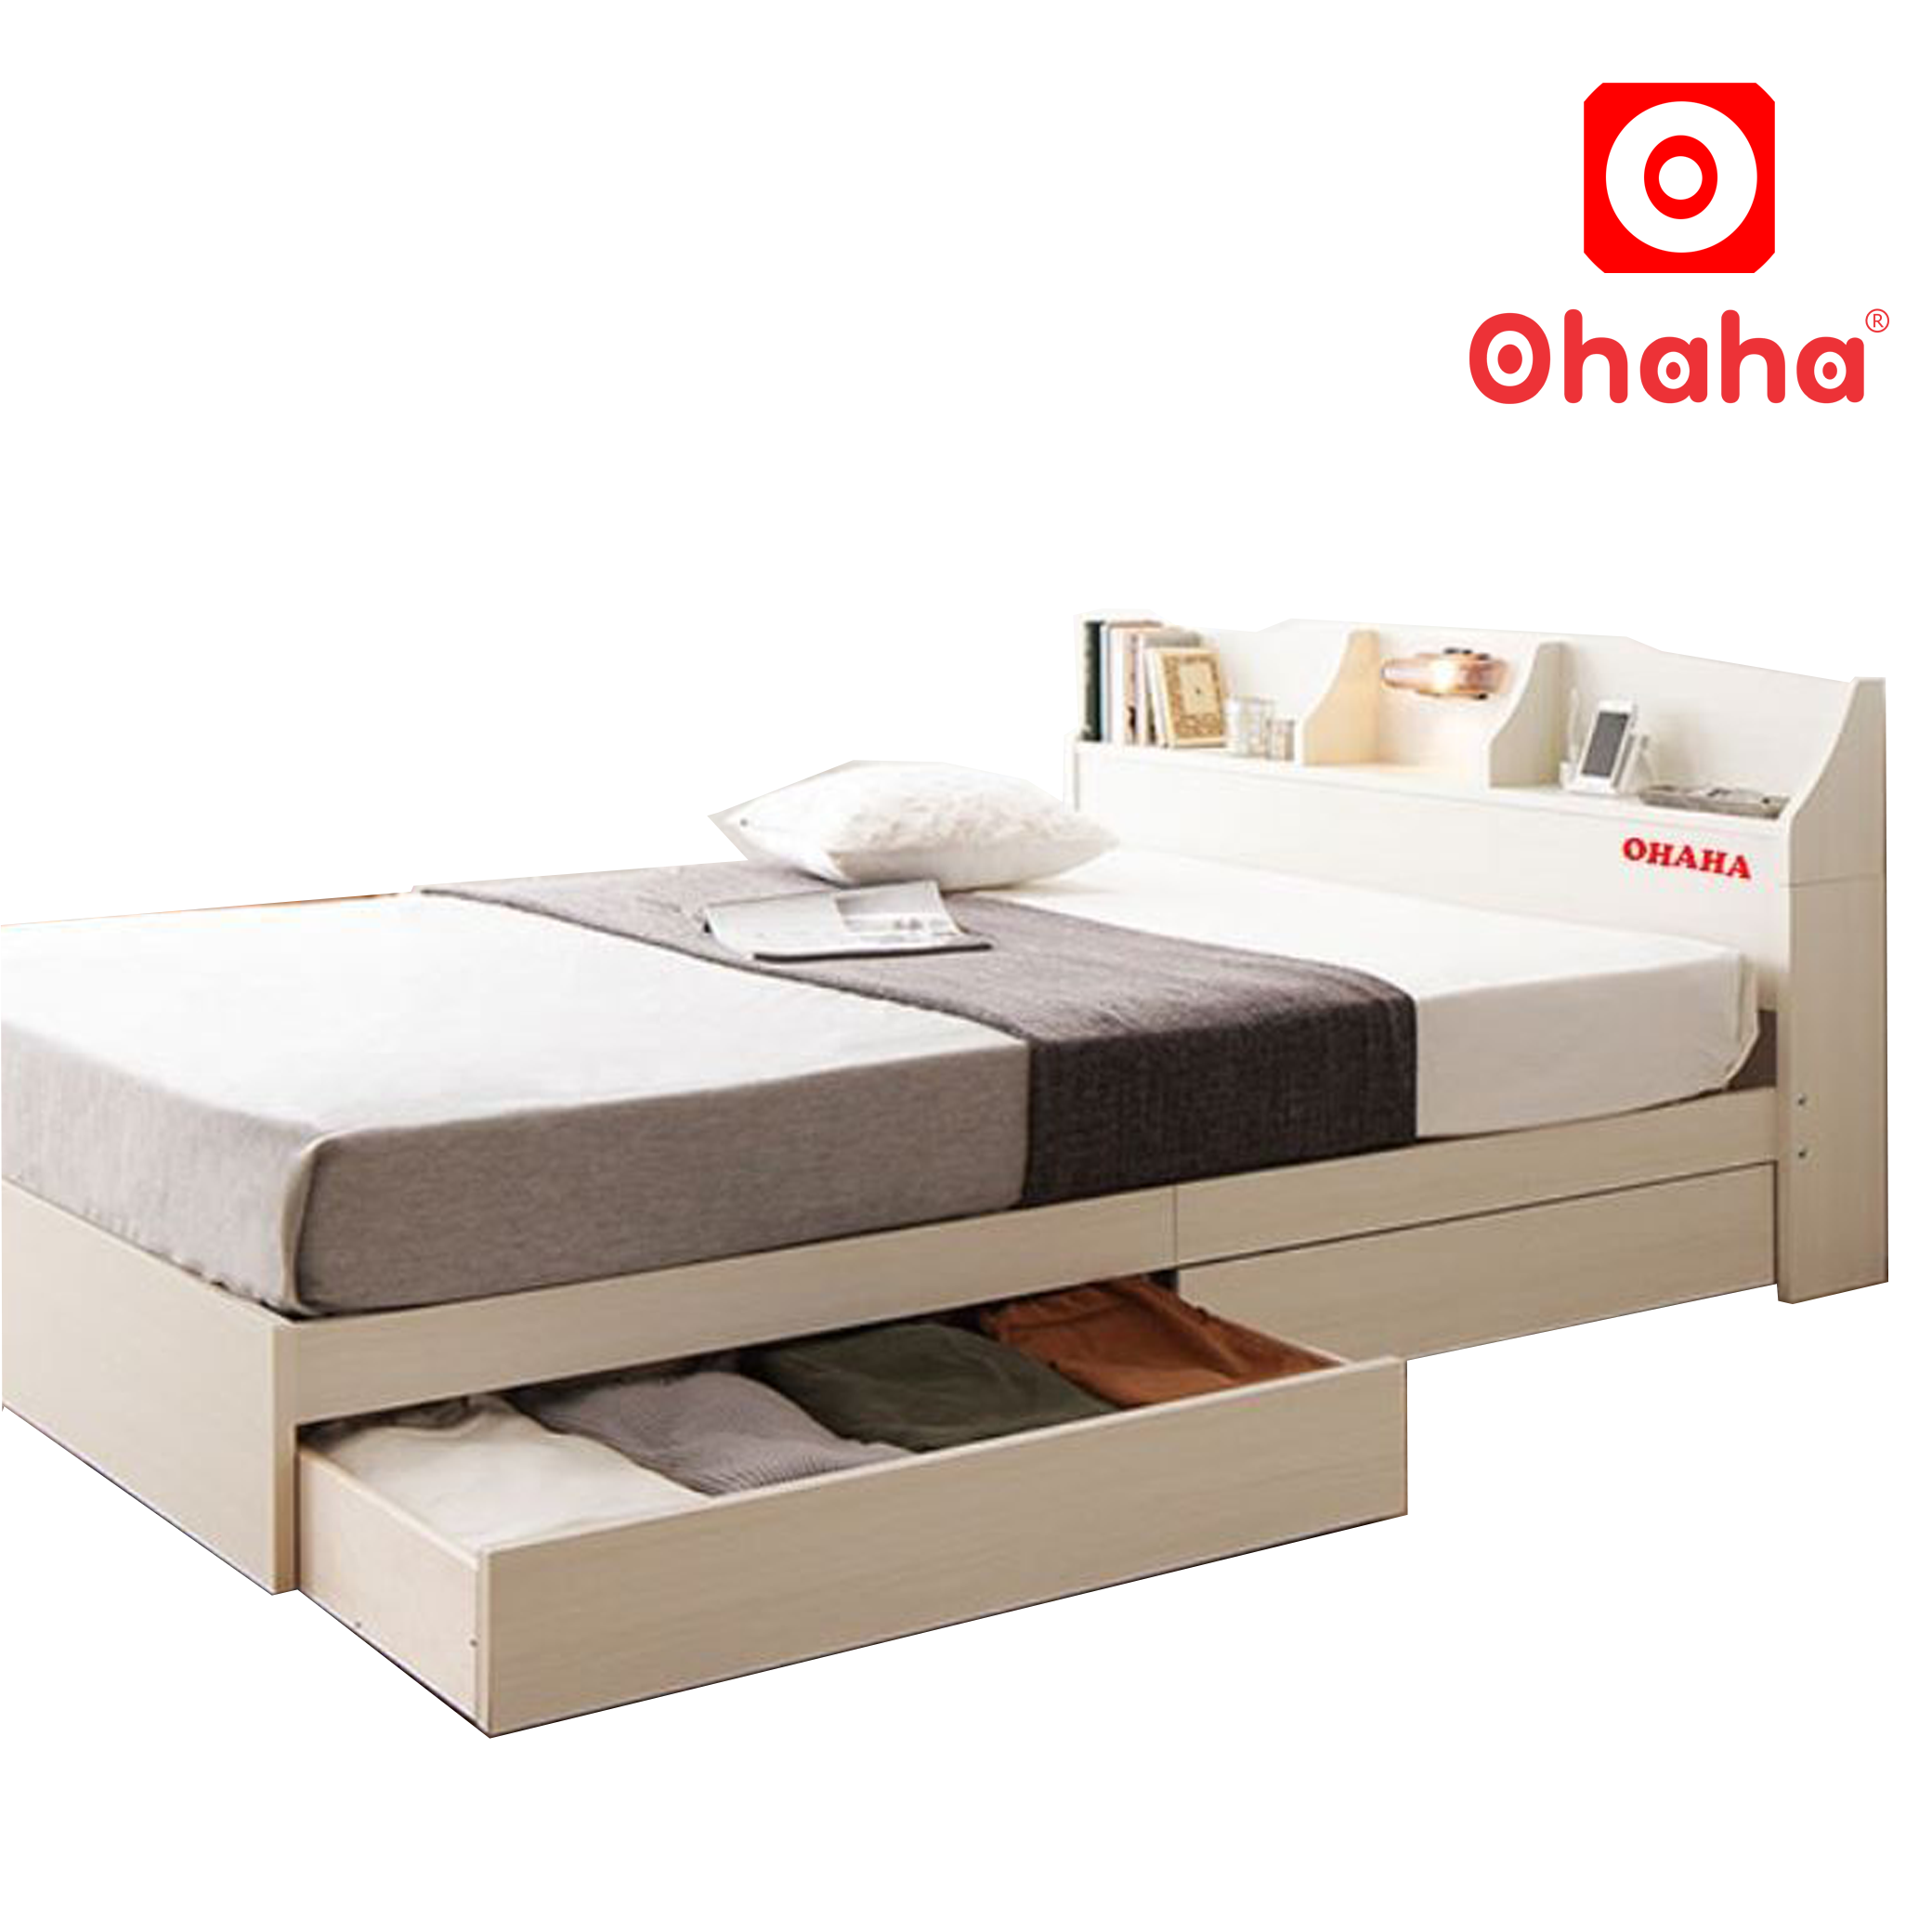 Giường ngủ cao cấp MDF lõi xanh chống ẩm OHAHA 002 - White bed